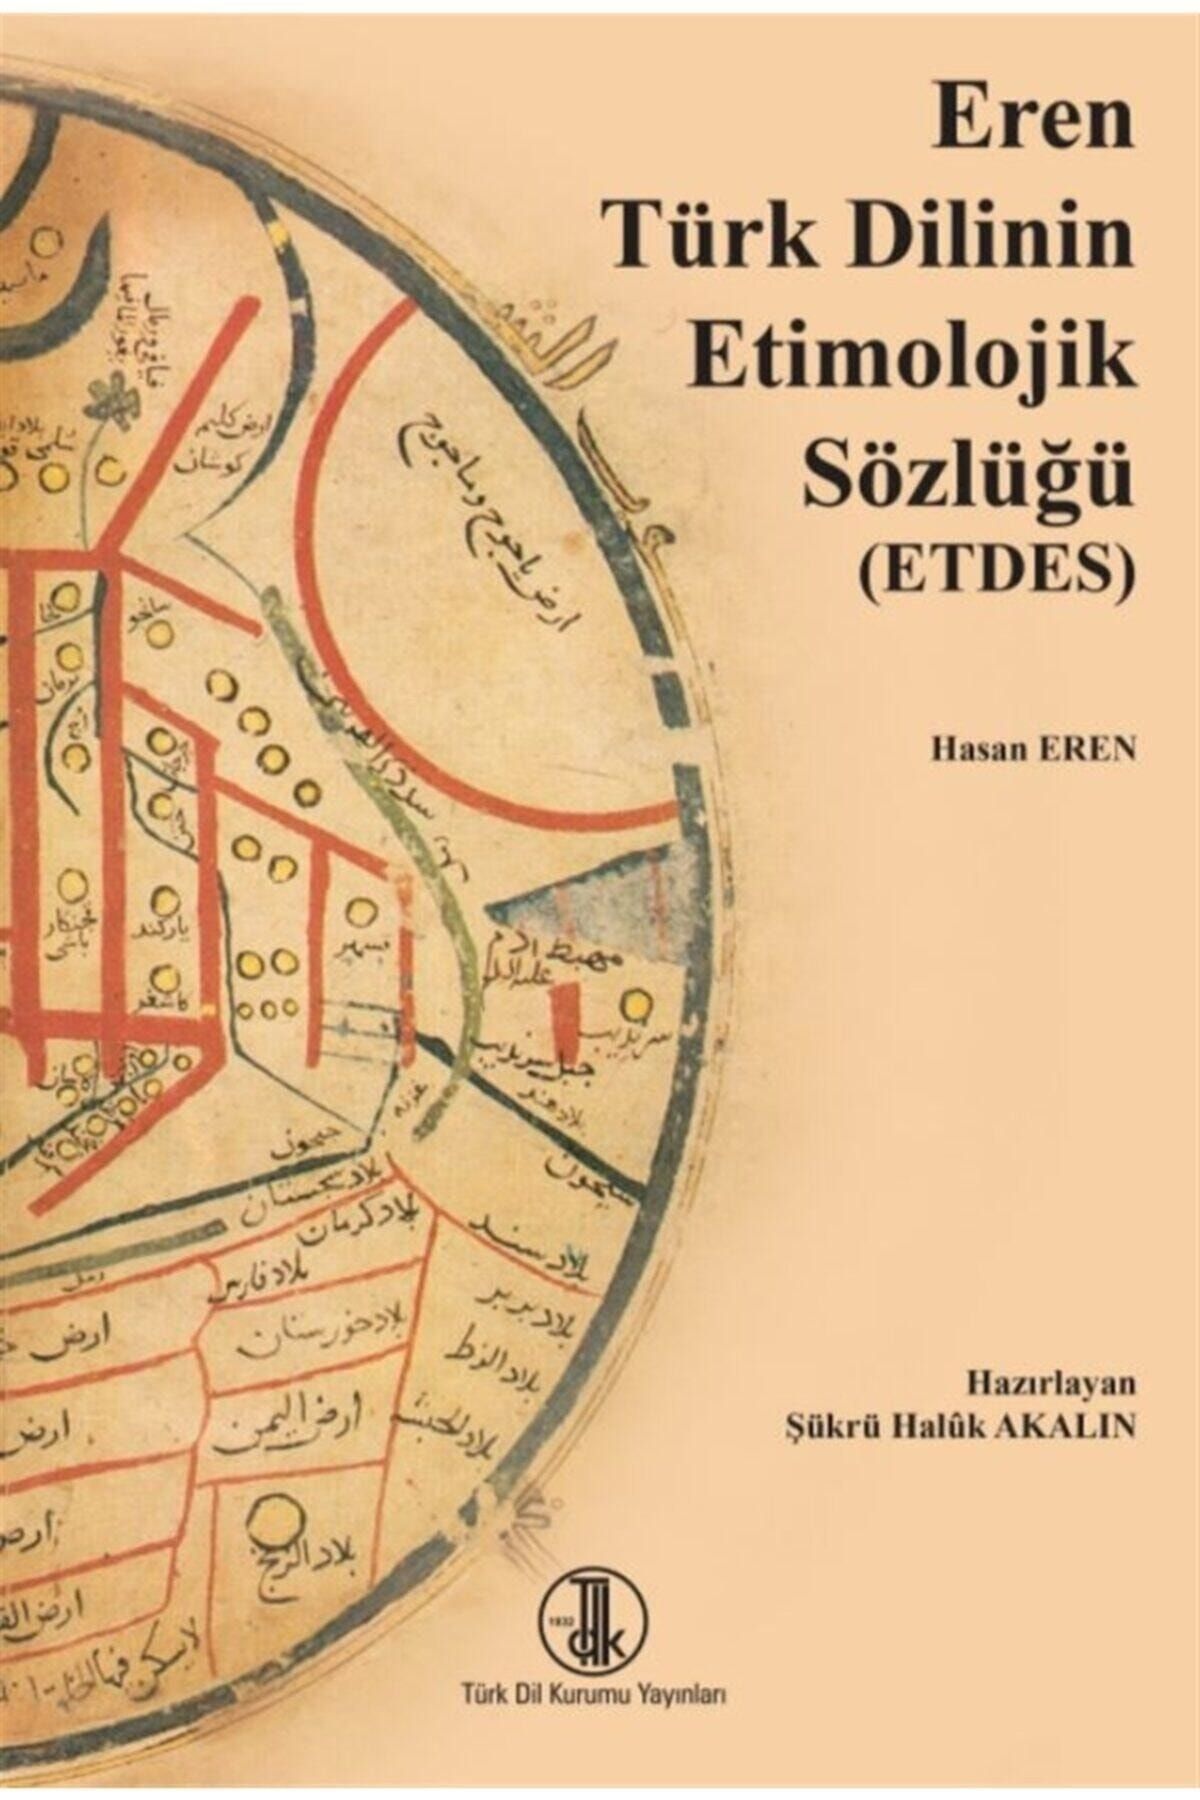 Türk Dil Kurumu Yayınları Eren Türk Dilinin Etimolojik Sözlüğü (etdes) - Hasan Eren 9789751746160